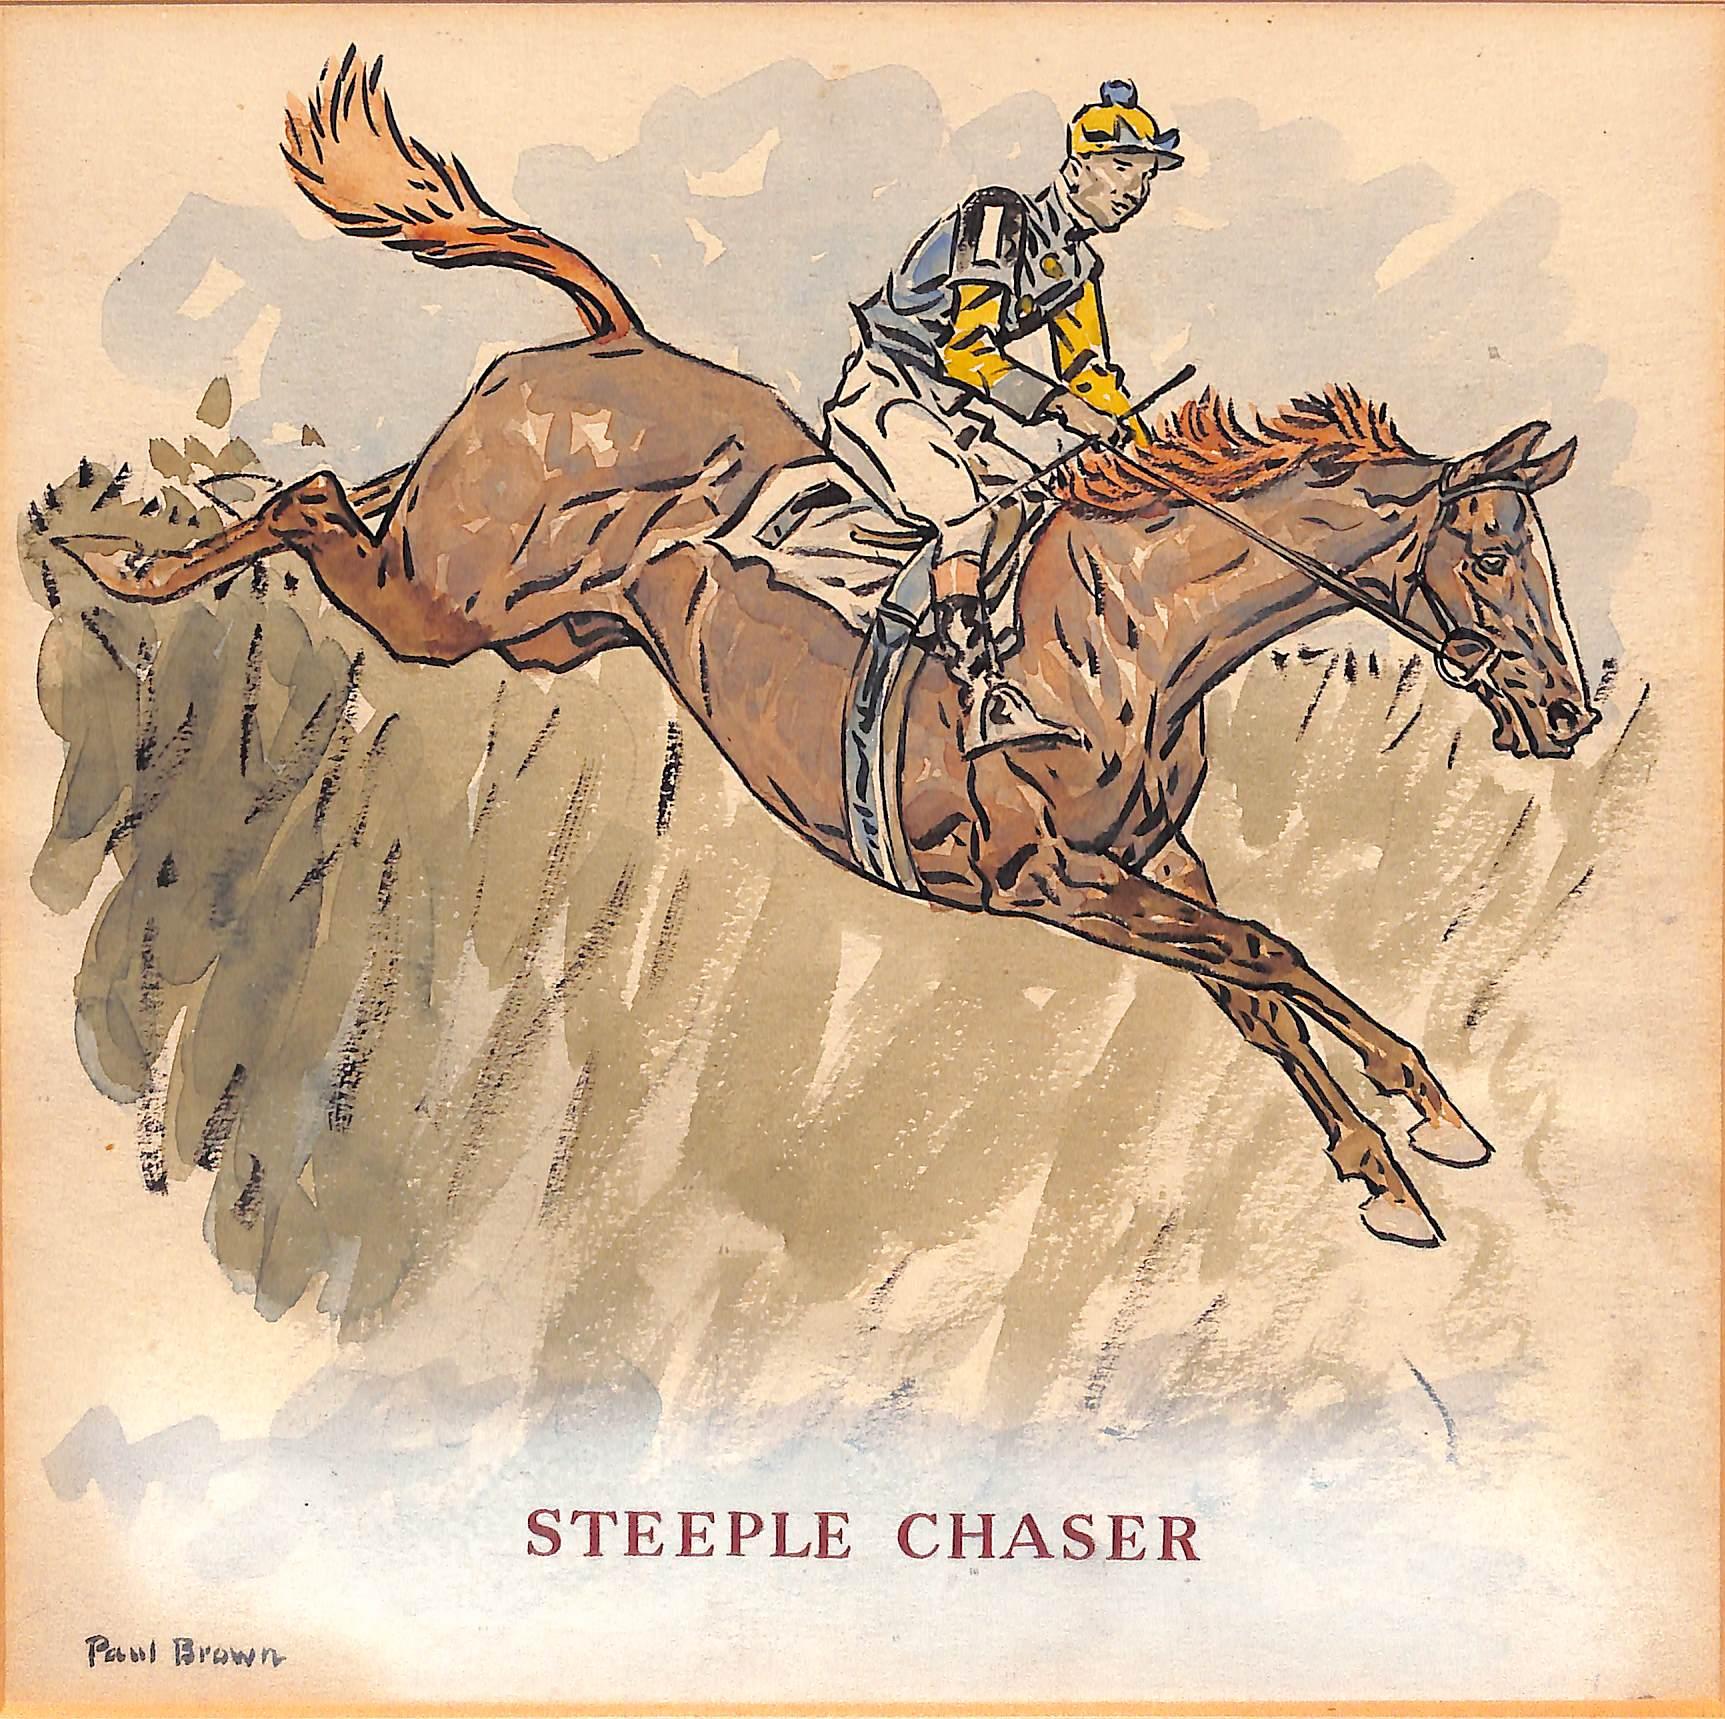 Paul Brown Watercolor Painting "Steeple Chaser" - Art by Paul Desmond Brown